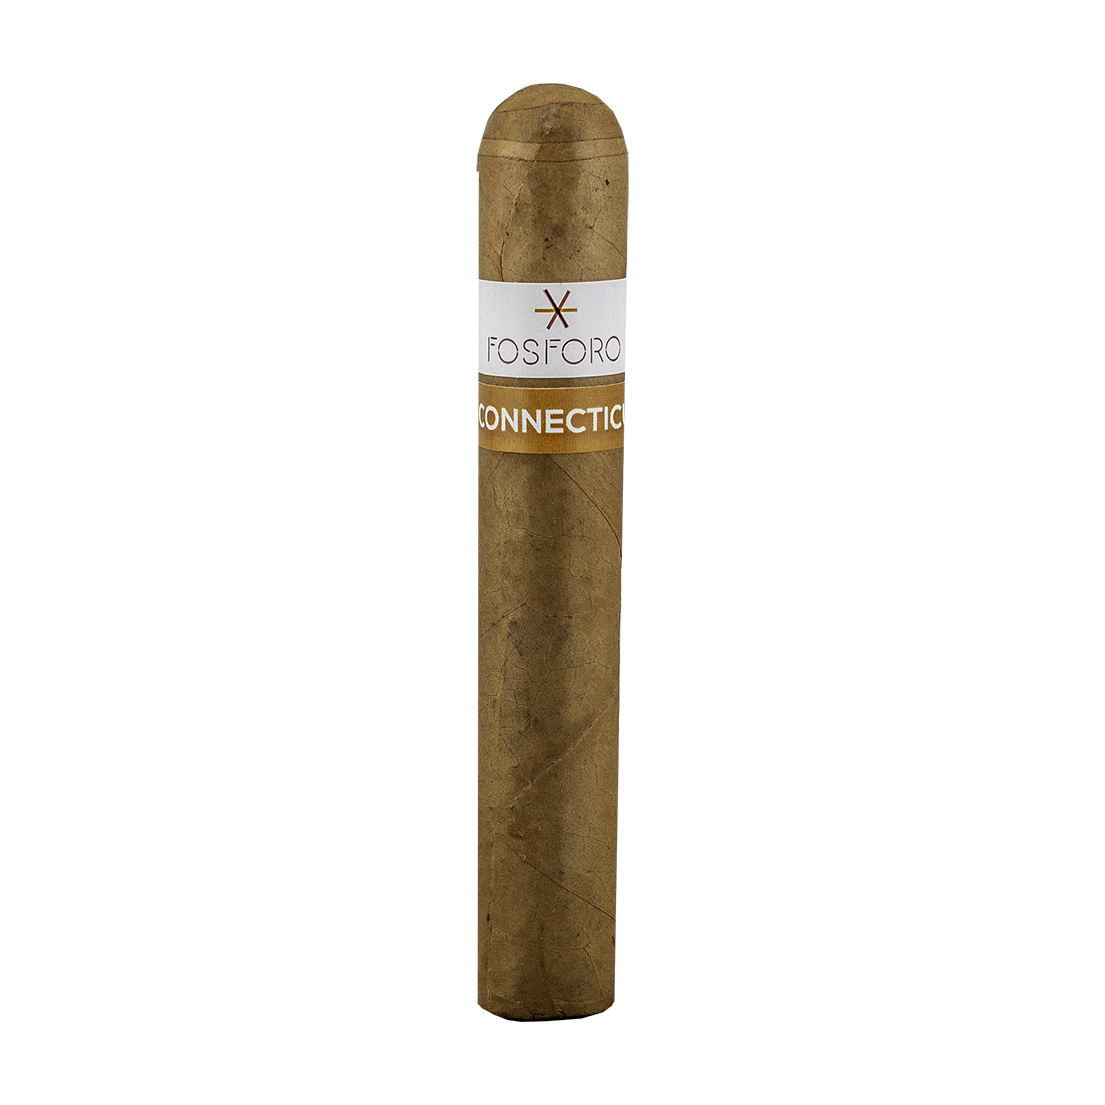 Fosforo Connecticut Robusto Cigar - Single